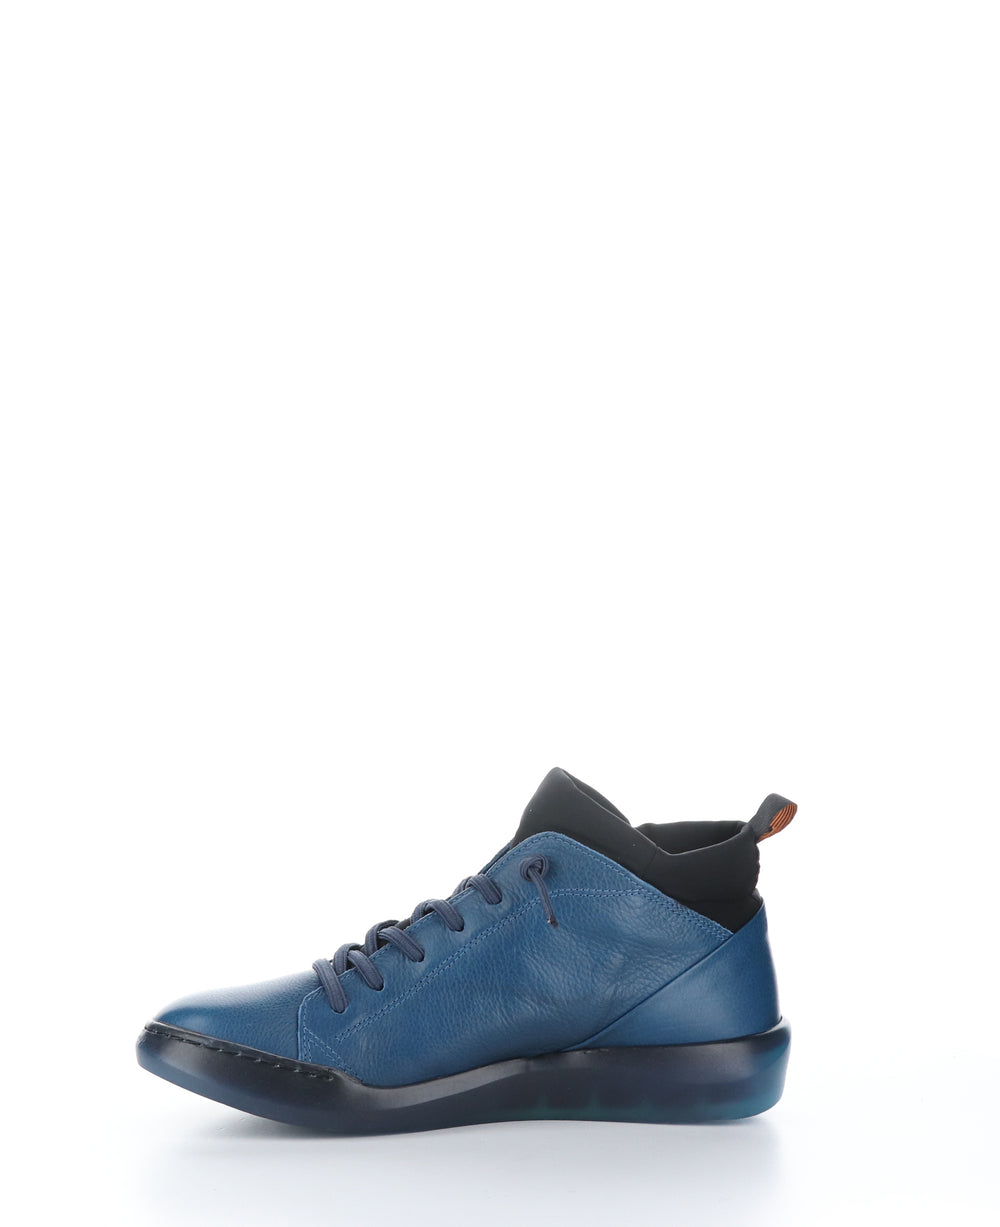 BIEL549SOF Blue Denim/Black Round Toe Shoes|BIEL549SOF Chaussures à Bout Rond in Bleu